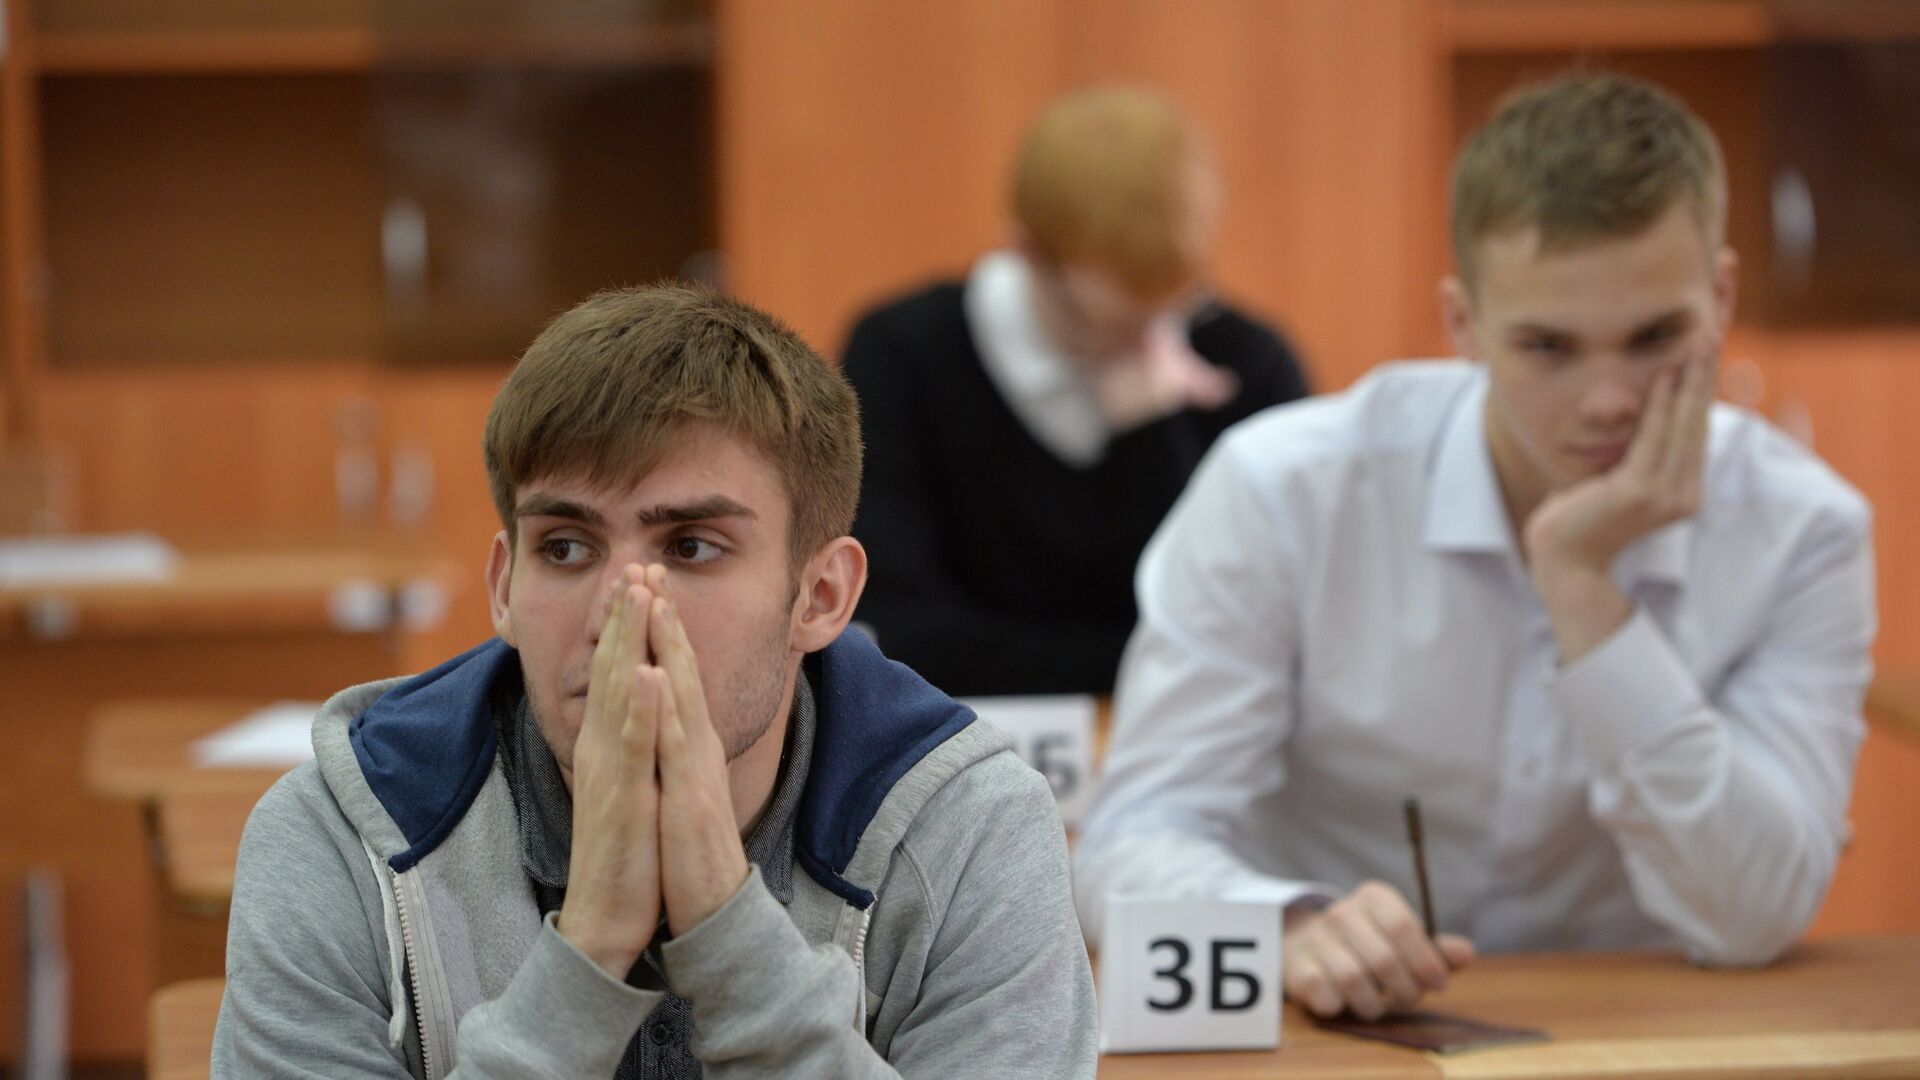 Ученики в классе перед началом экзамена - Sputnik Беларусь, 1920, 17.02.2021